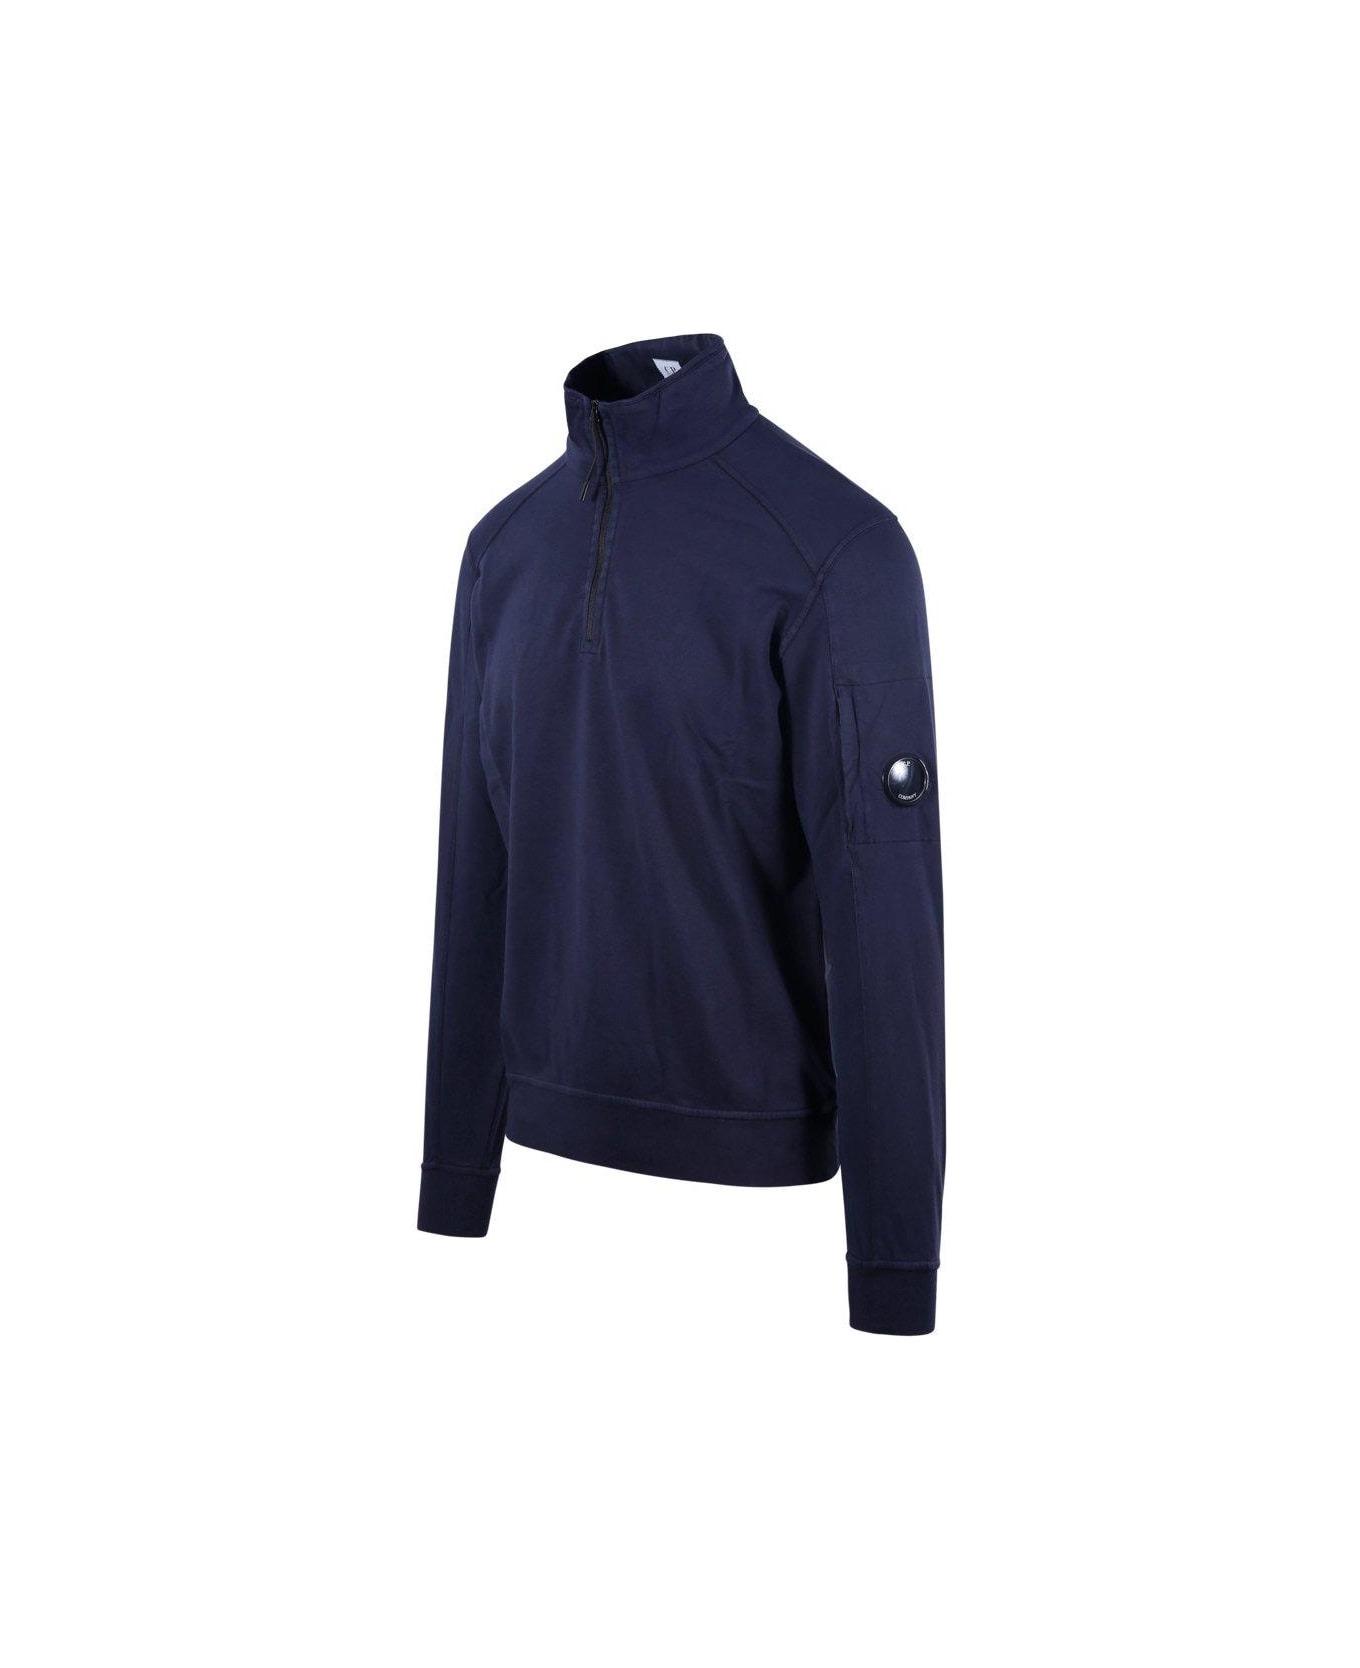 C.P. Company High-neck Half Zip Sweatshirt - Blue